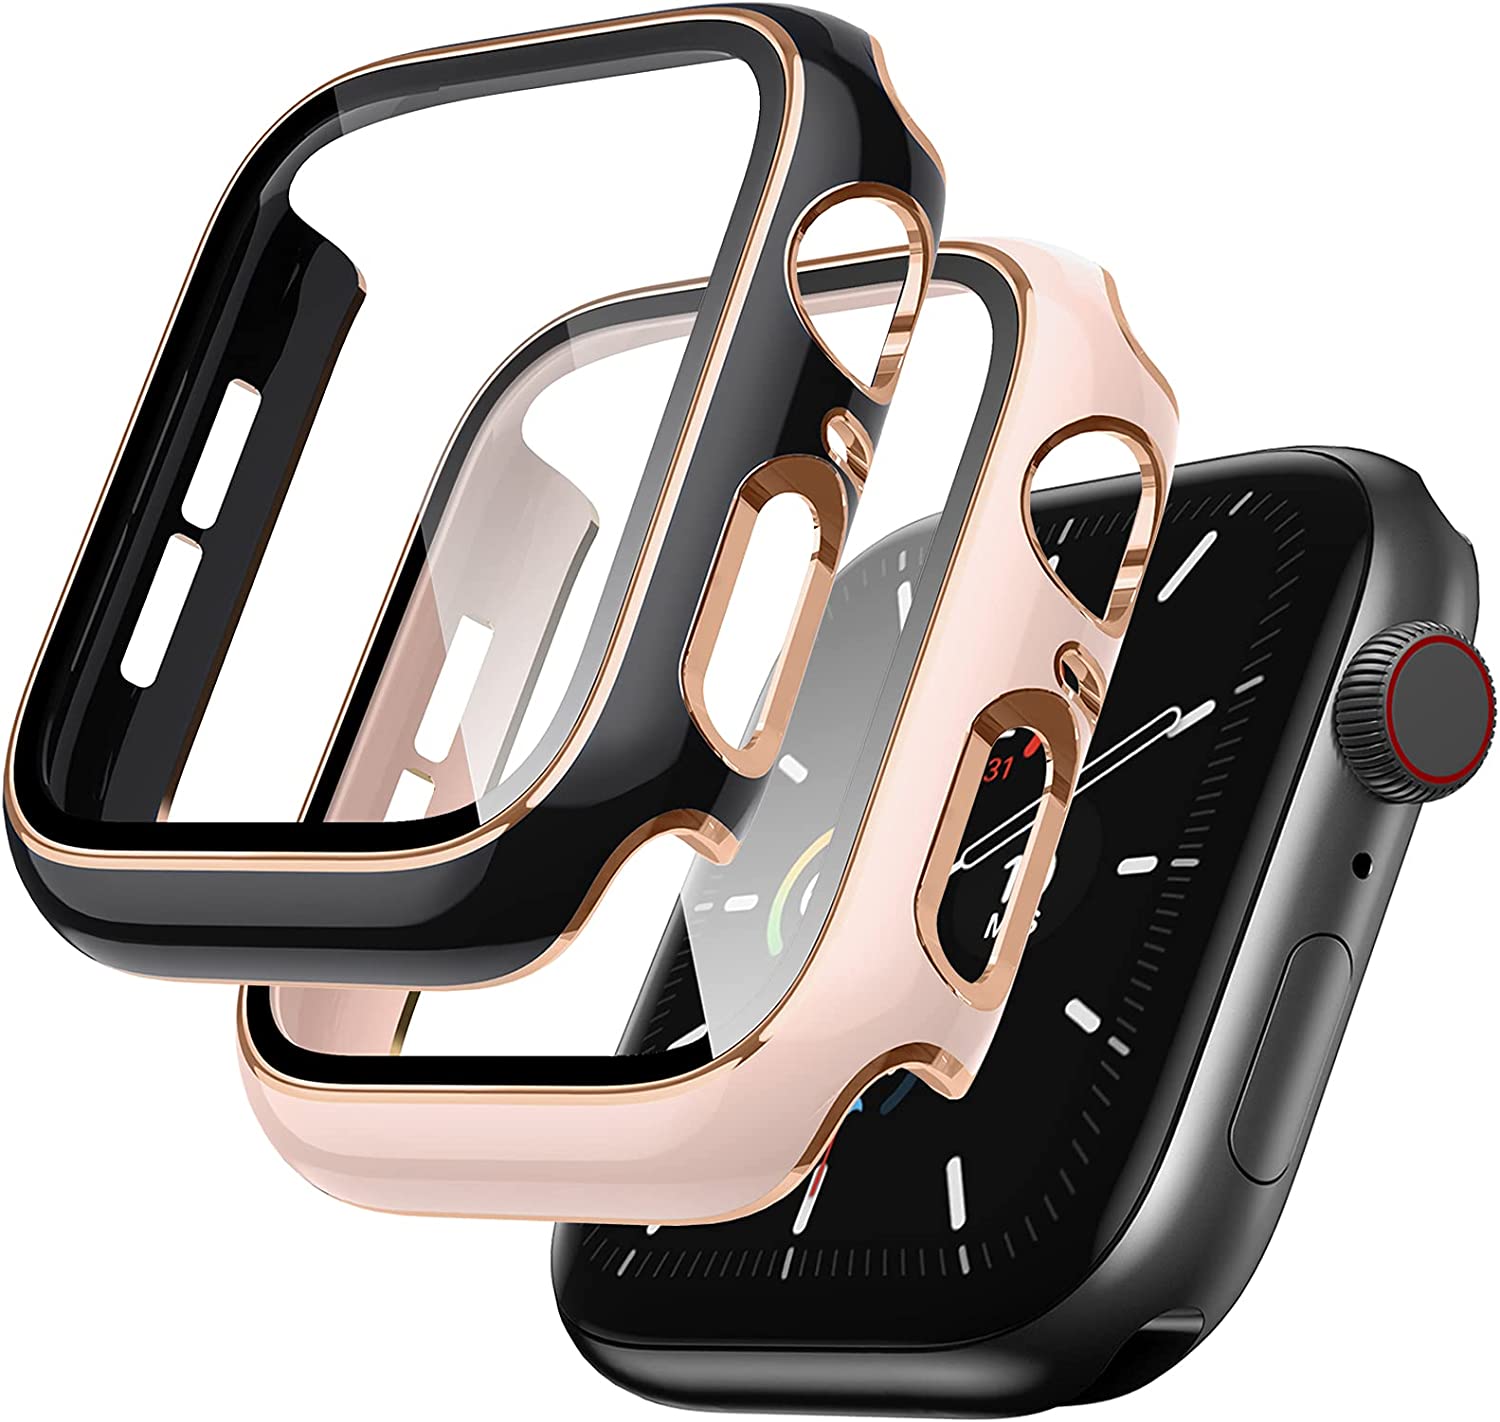 러버그 2팩 케이스 애플 워치 40mm SE/시리즈 6/5/4 강화유리 스크린 프로텍터 내장 초박형 범퍼 풀커버 iWatch 보호 커버 여성용 핑크/블랙